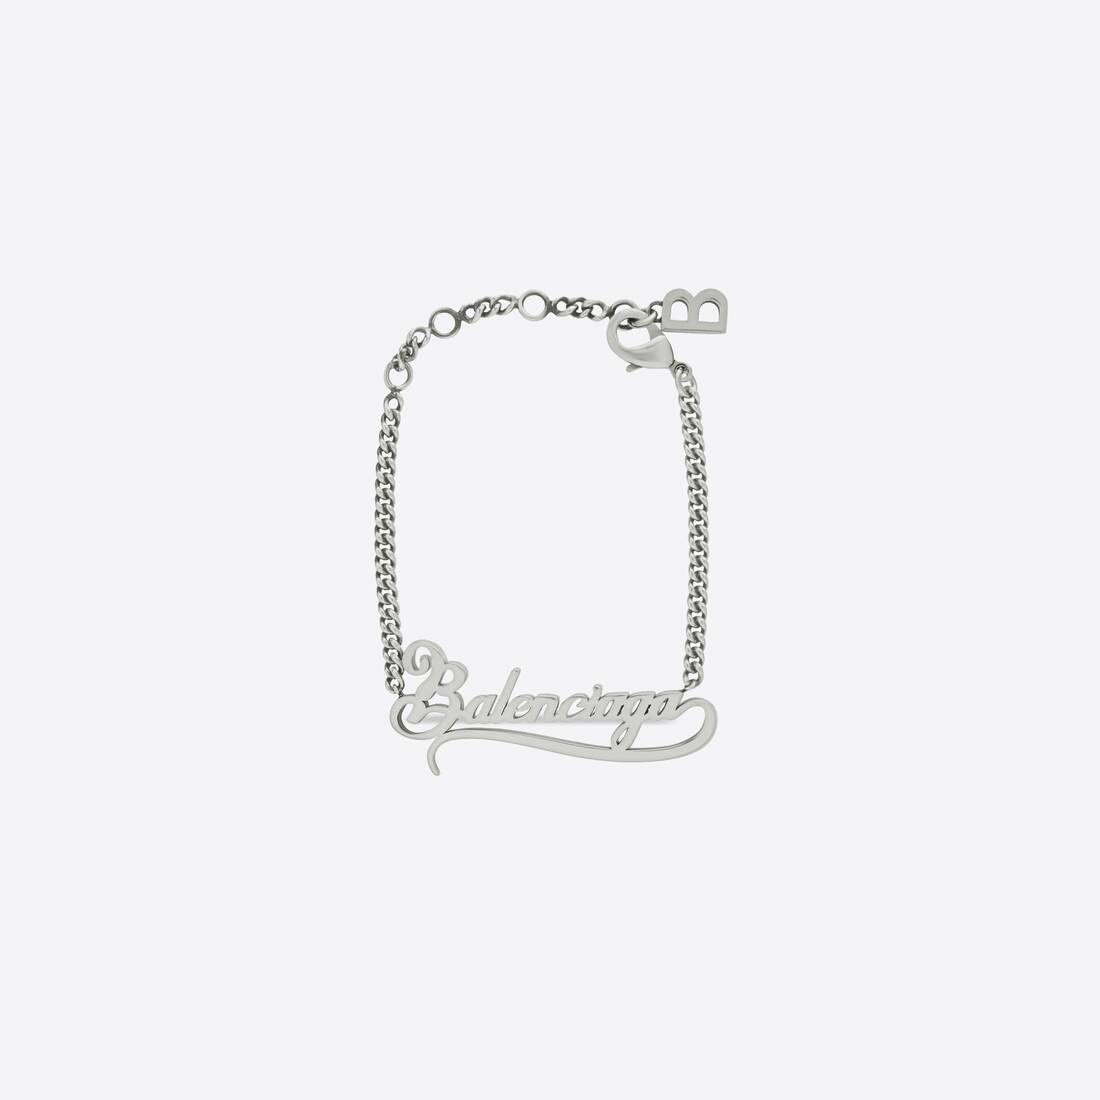 Typo Valentine Bracelet in Silver - 1